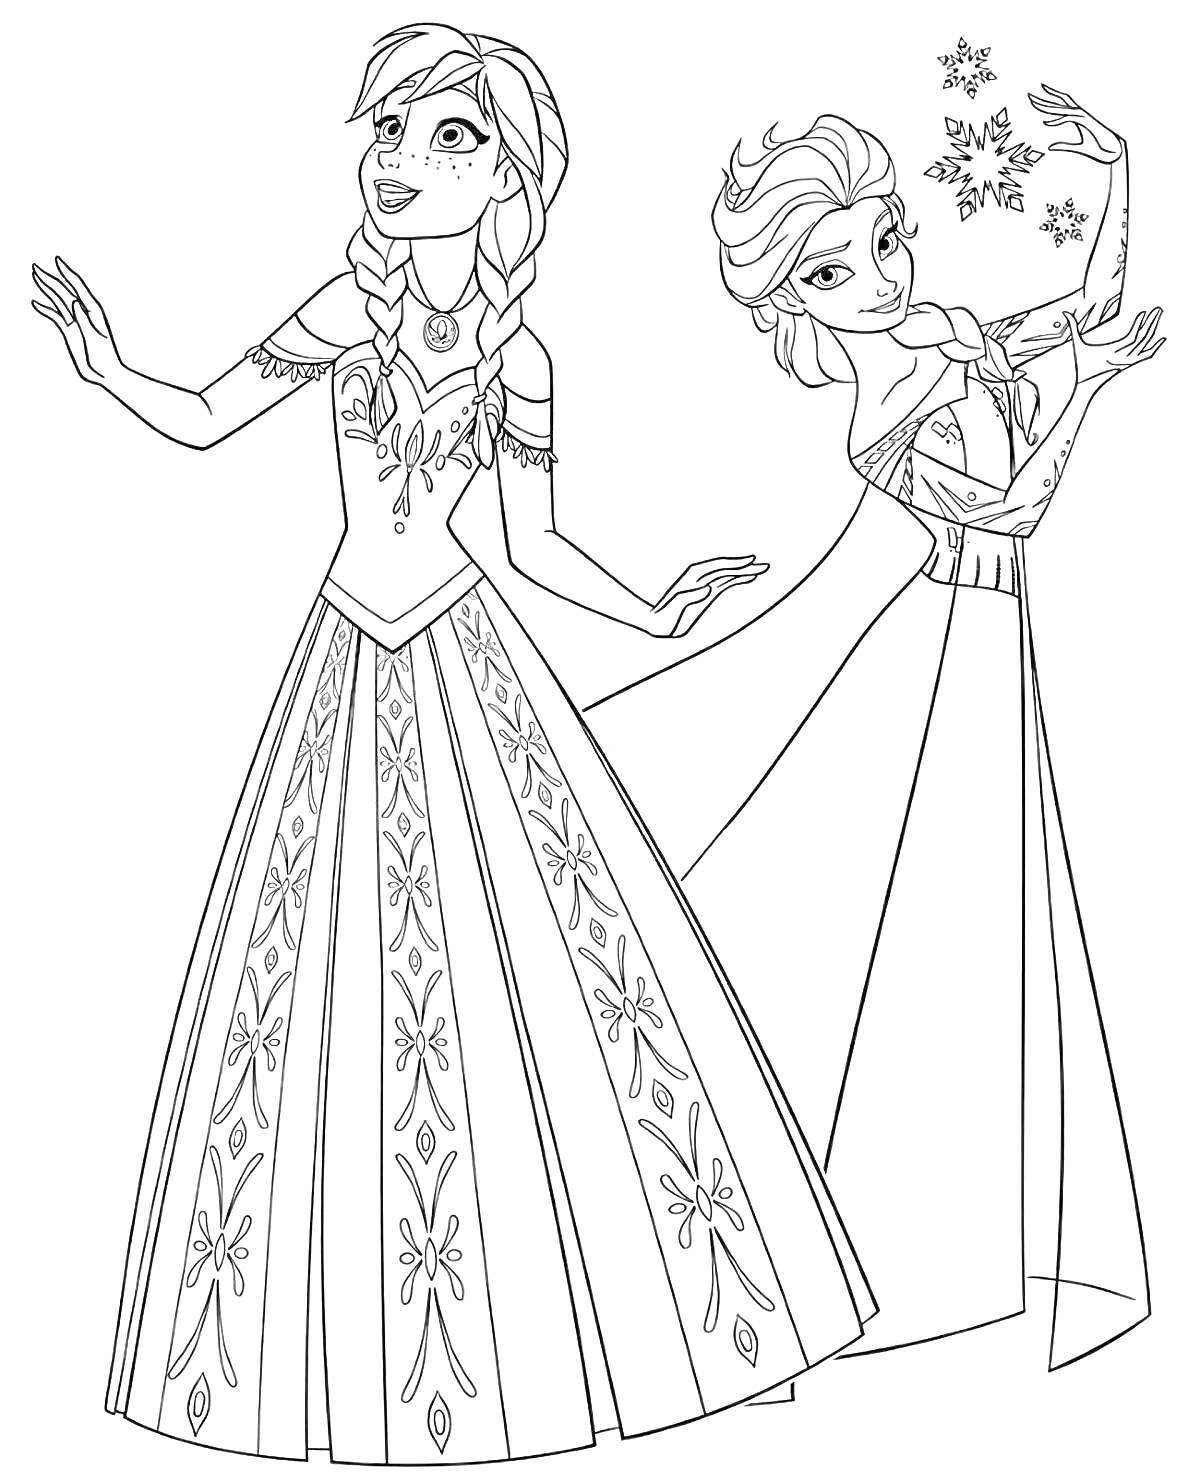 Раскраска Эльза и Анна в длинных платьях, Эльза создает снежинки